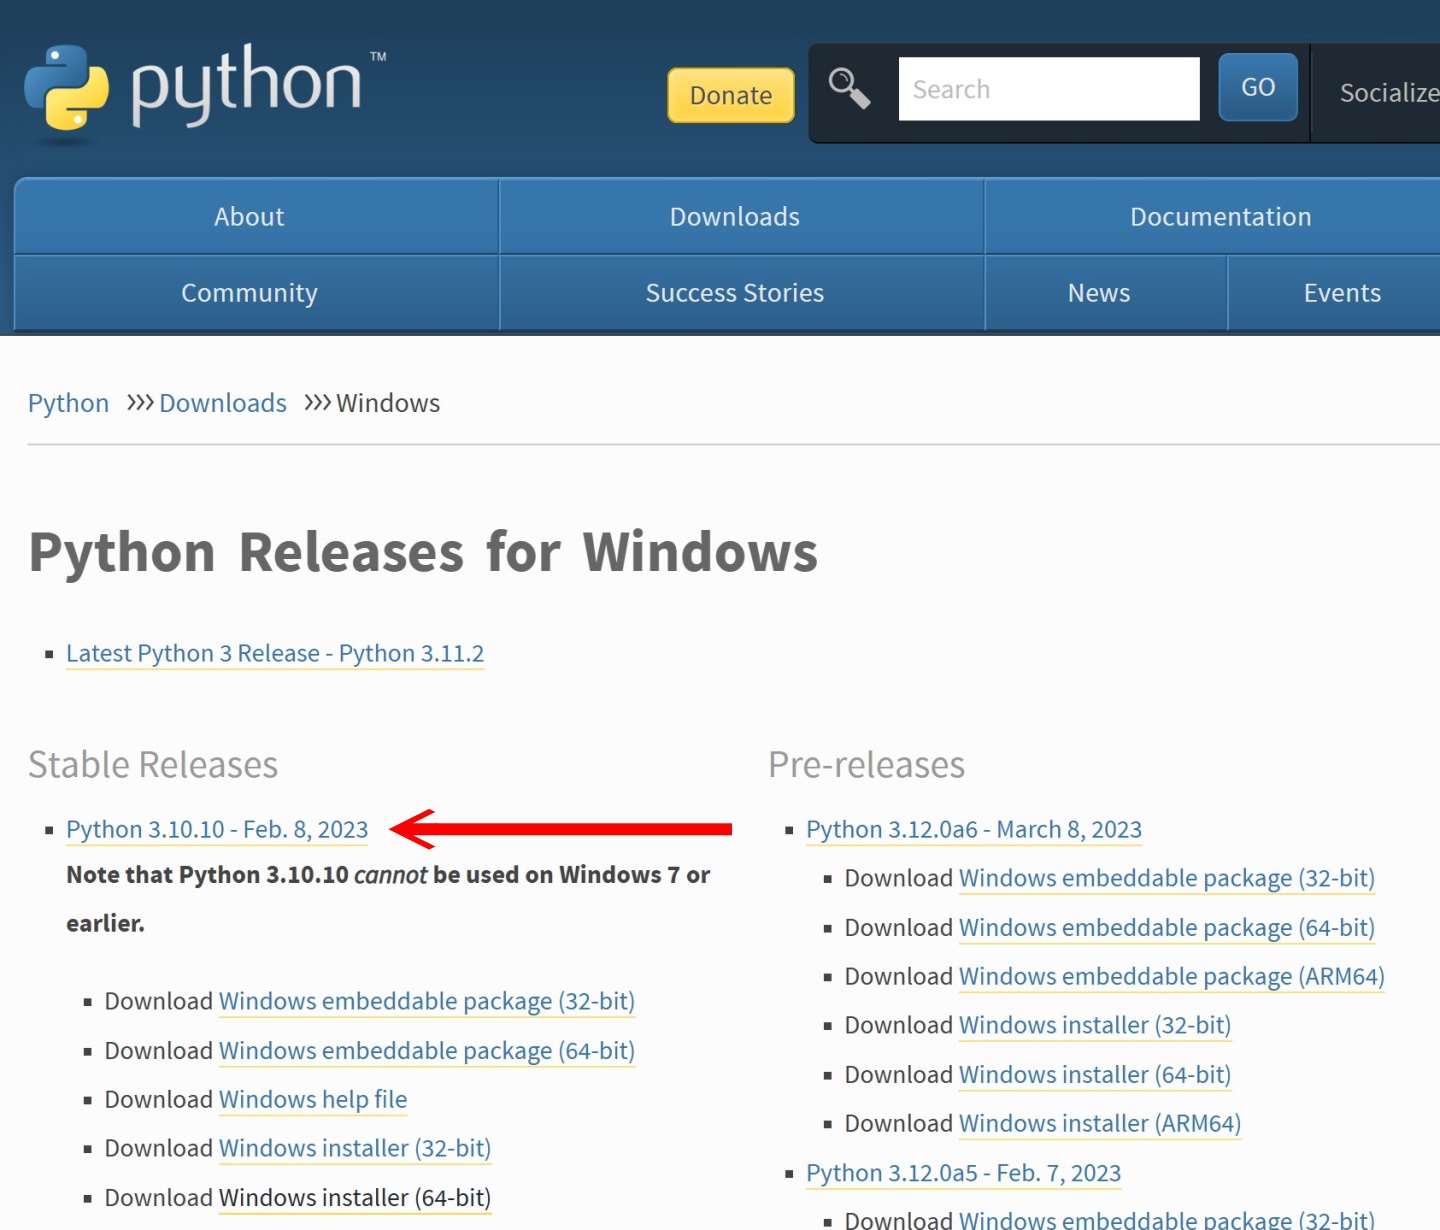 下載Python時注意需要選擇3.10版，撰稿時對應的版本為3.10.10。進入下載網頁時先選擇Python 3.10.10。